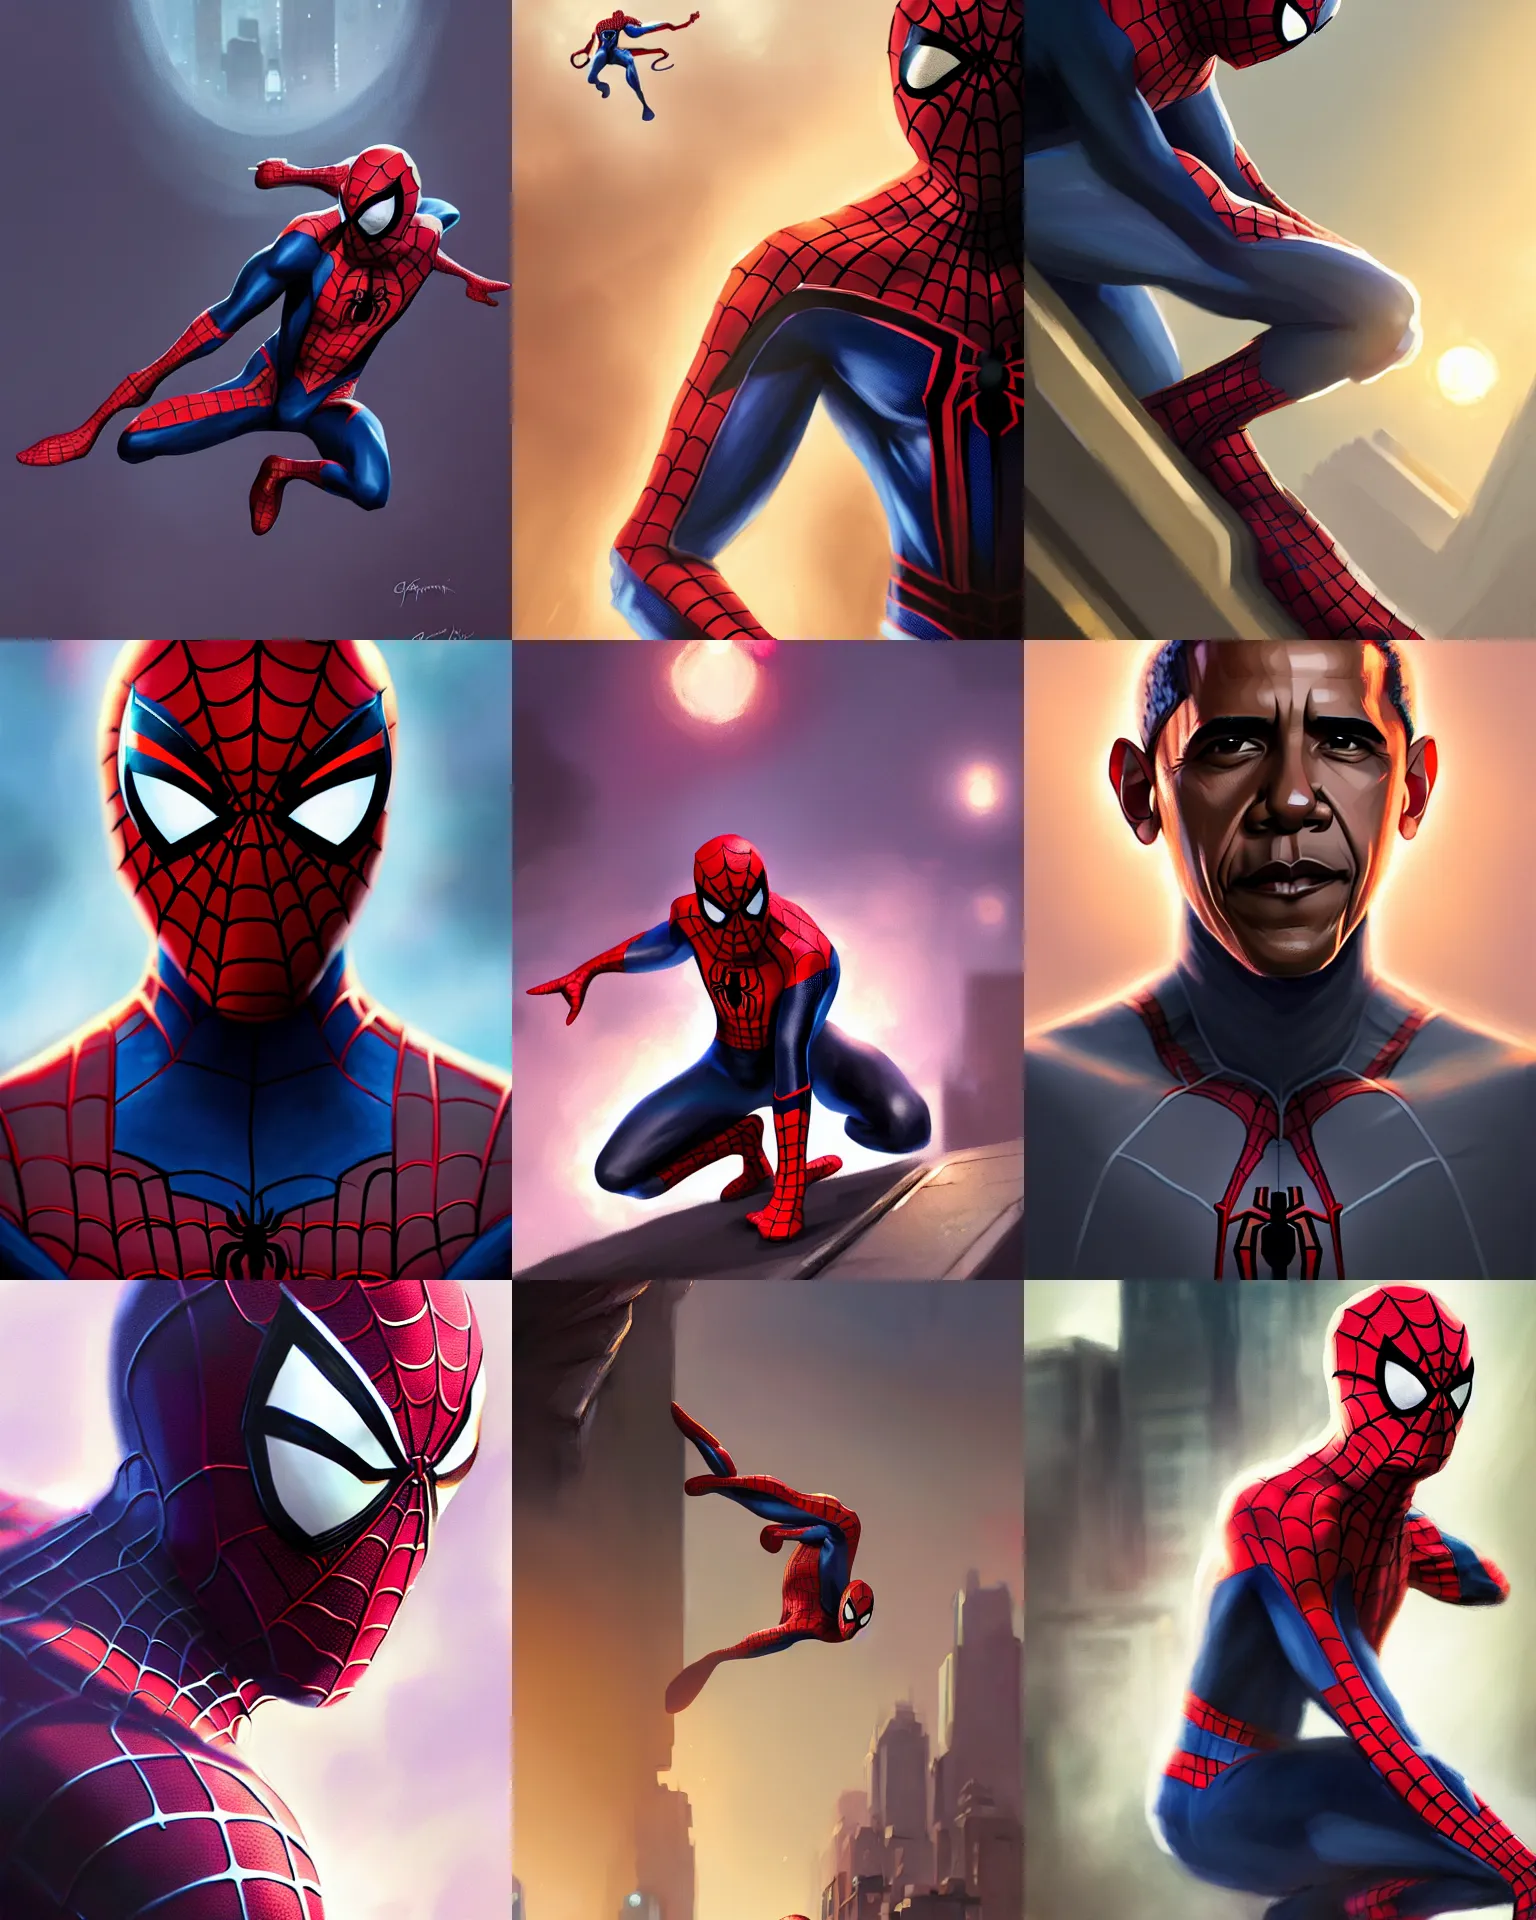 Prompt: Barack Obama in a Spider-Man suit, medium shot close up, details, sharp focus, illustration, by Jordan Grimmer and greg rutkowski, Trending artstation, pixiv, digital Art